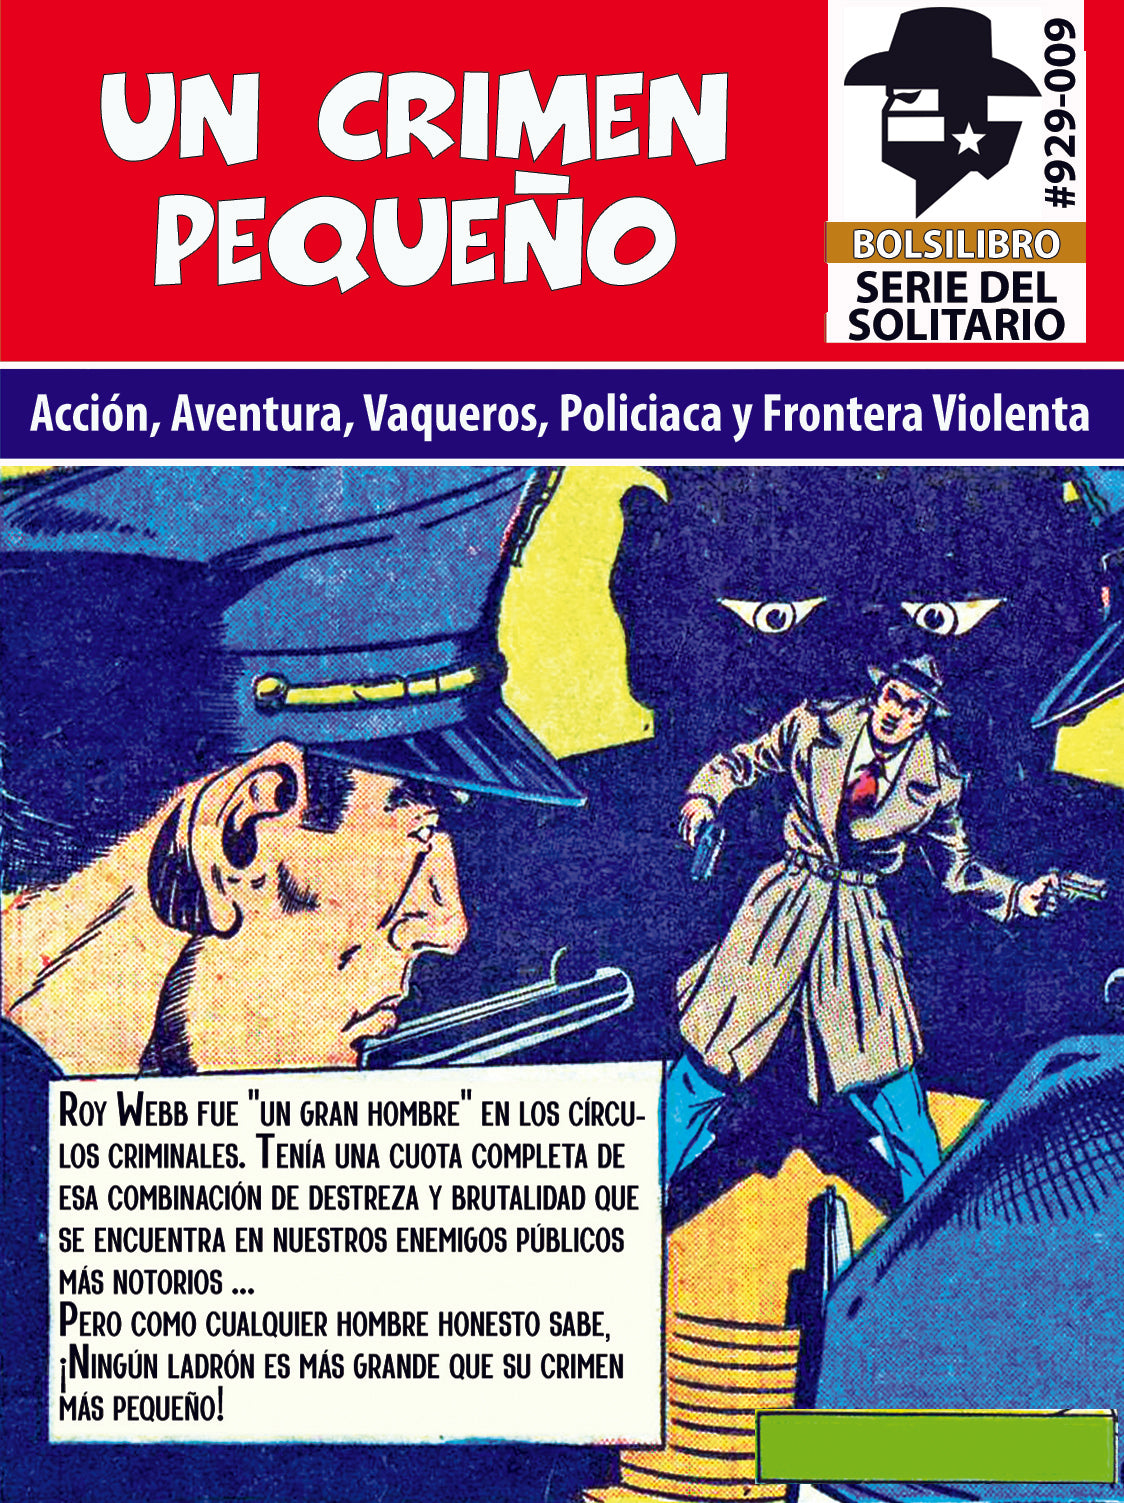 Set de 10 Novelas de Acción, Aventura, Policiaca, Vaqueros y/o Frontera Violenta